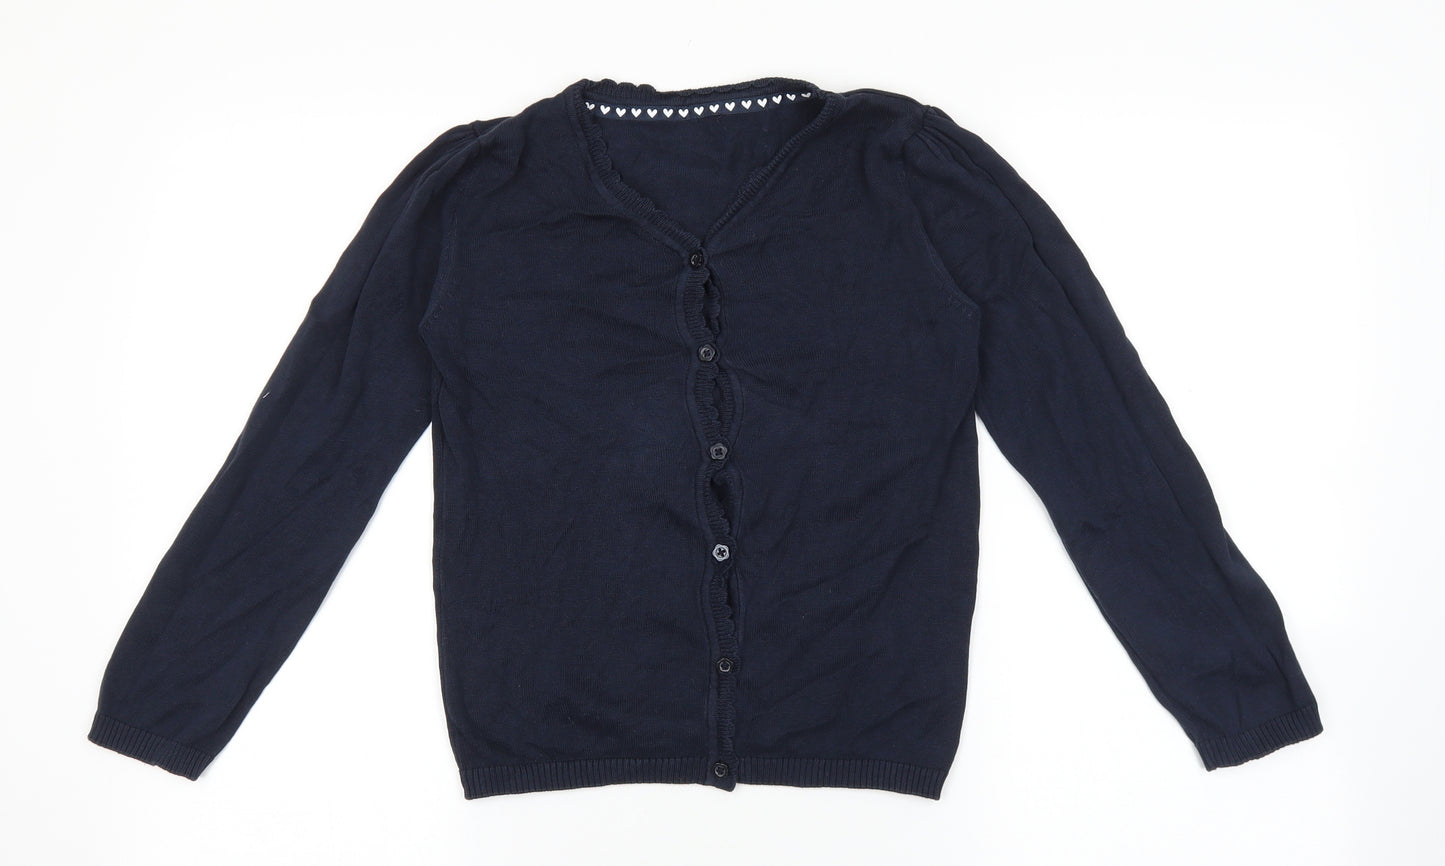 TU Girls Blue Round Neck 100% Cotton Cardigan Jumper Size 9 Years Button